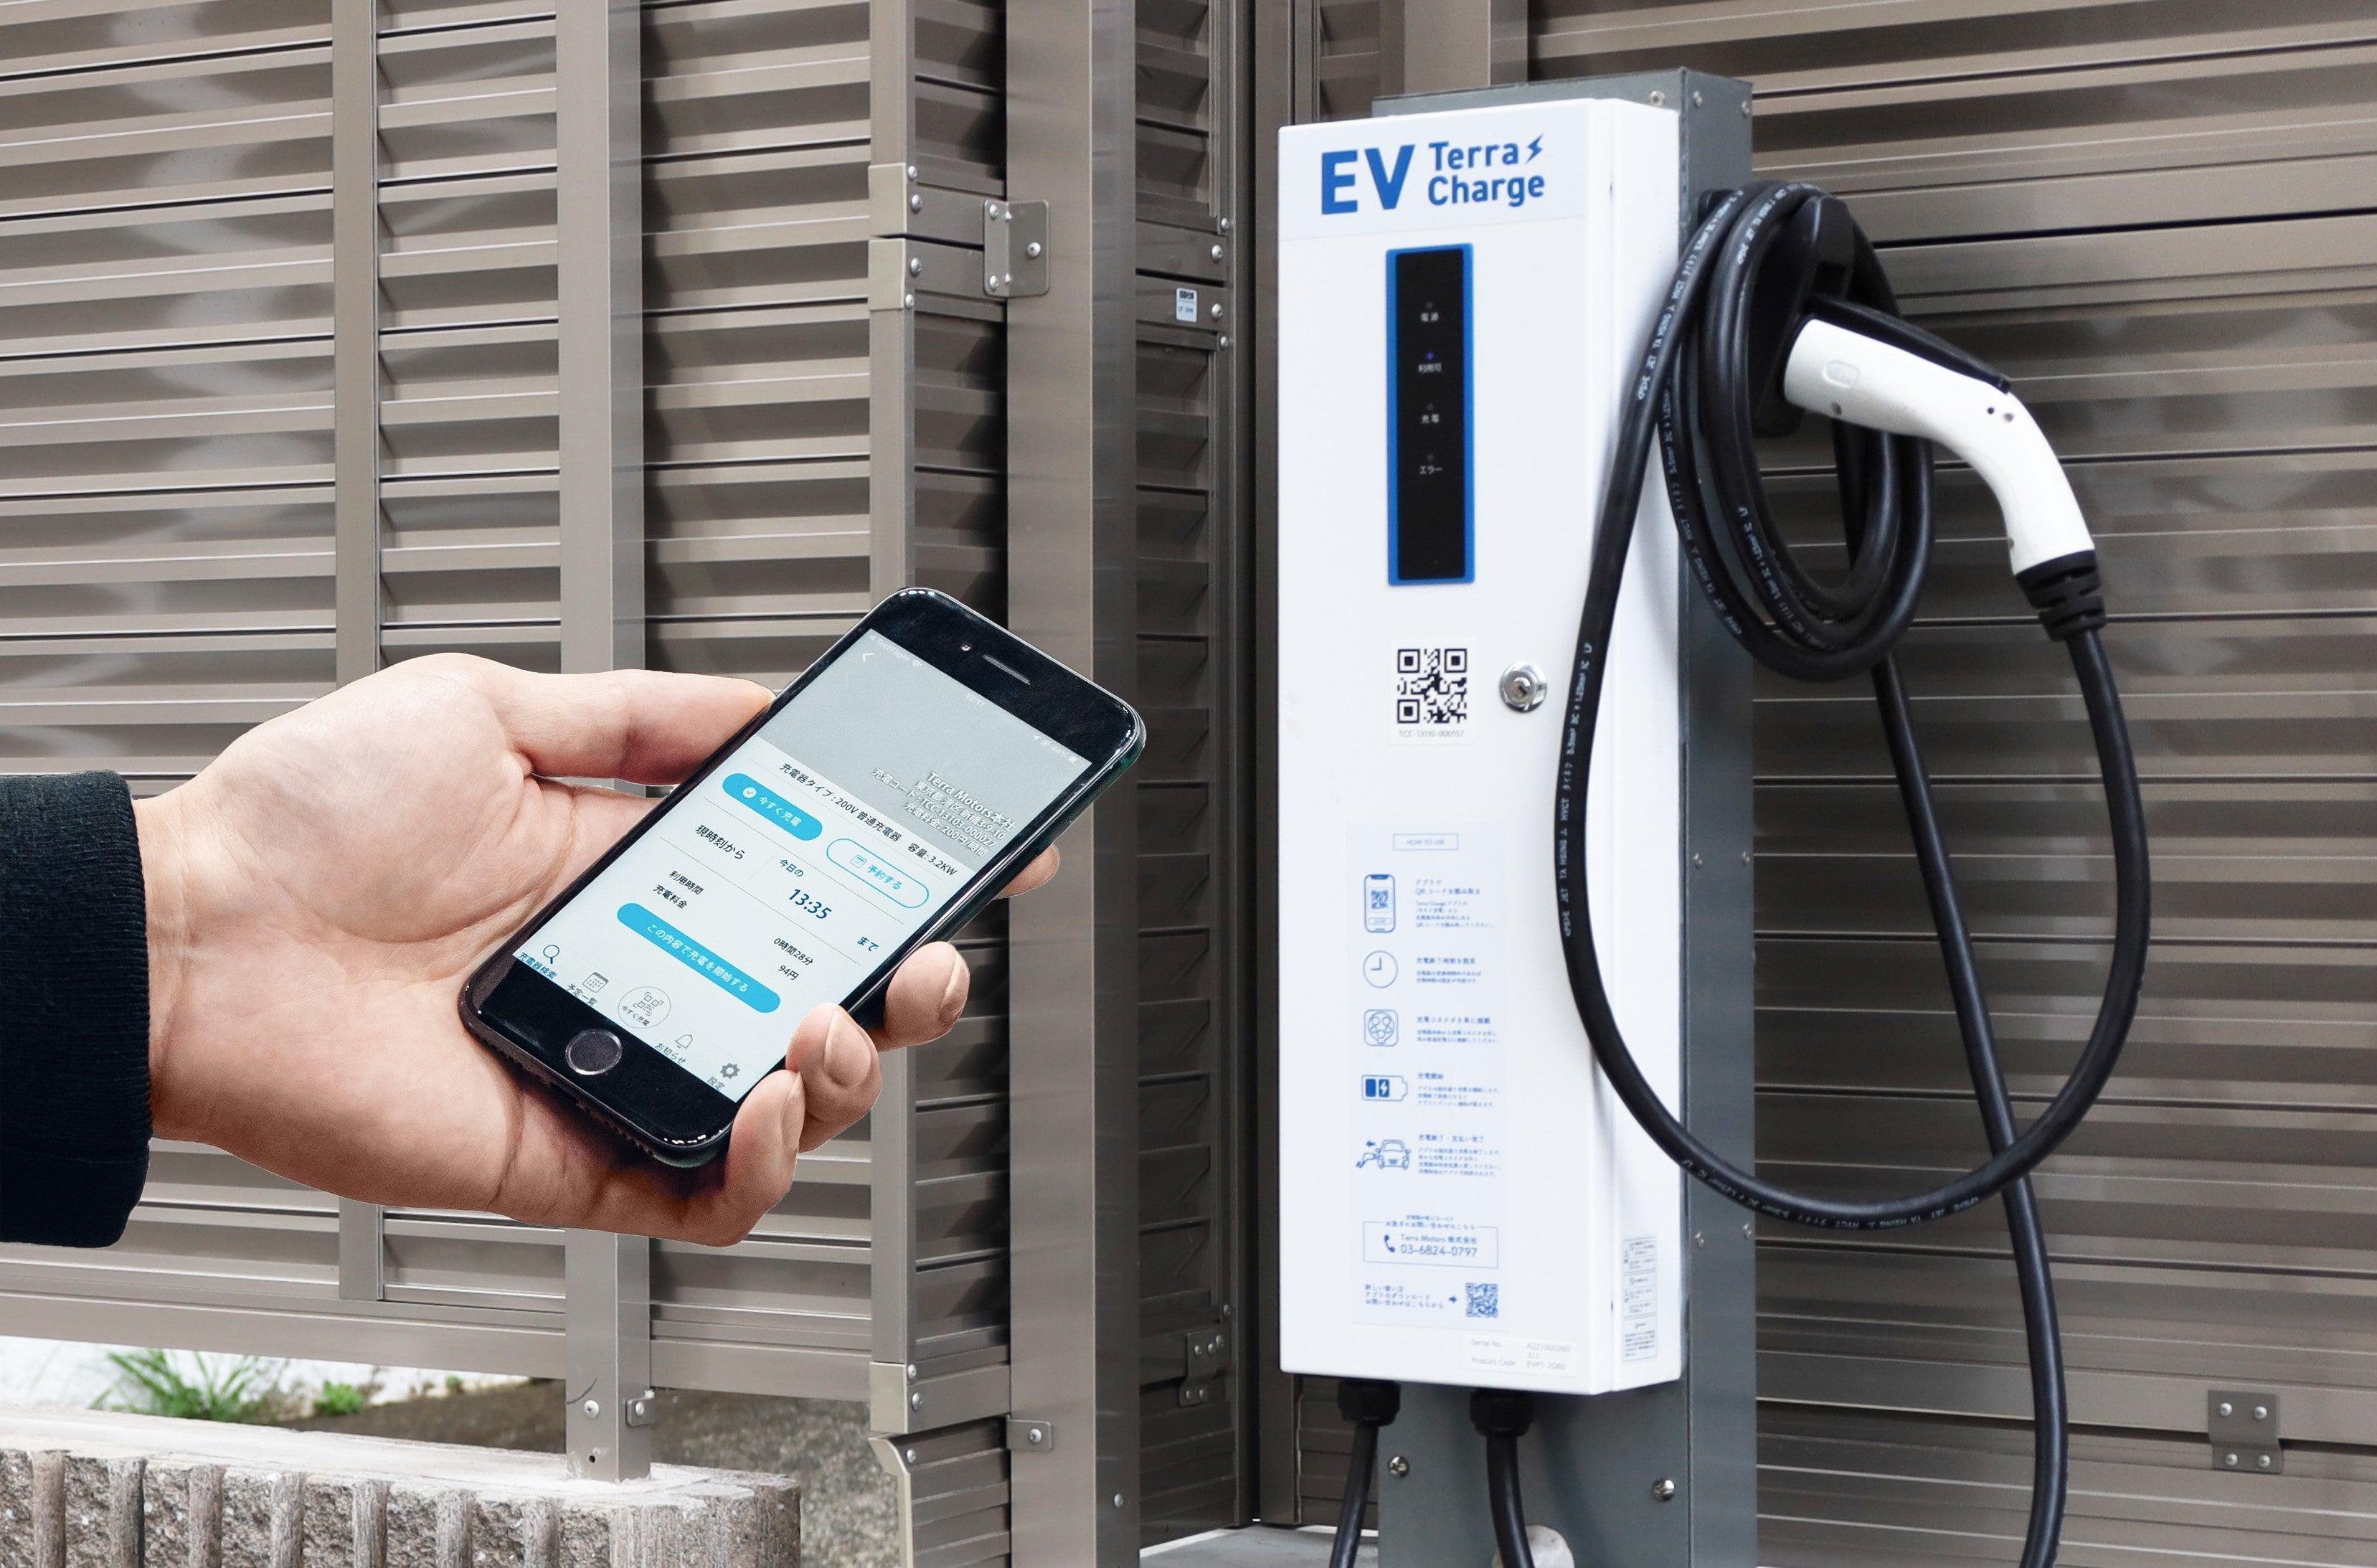 テラチャージ、徳洲会グループの東京西徳洲会病院へEV充電器の導入決定